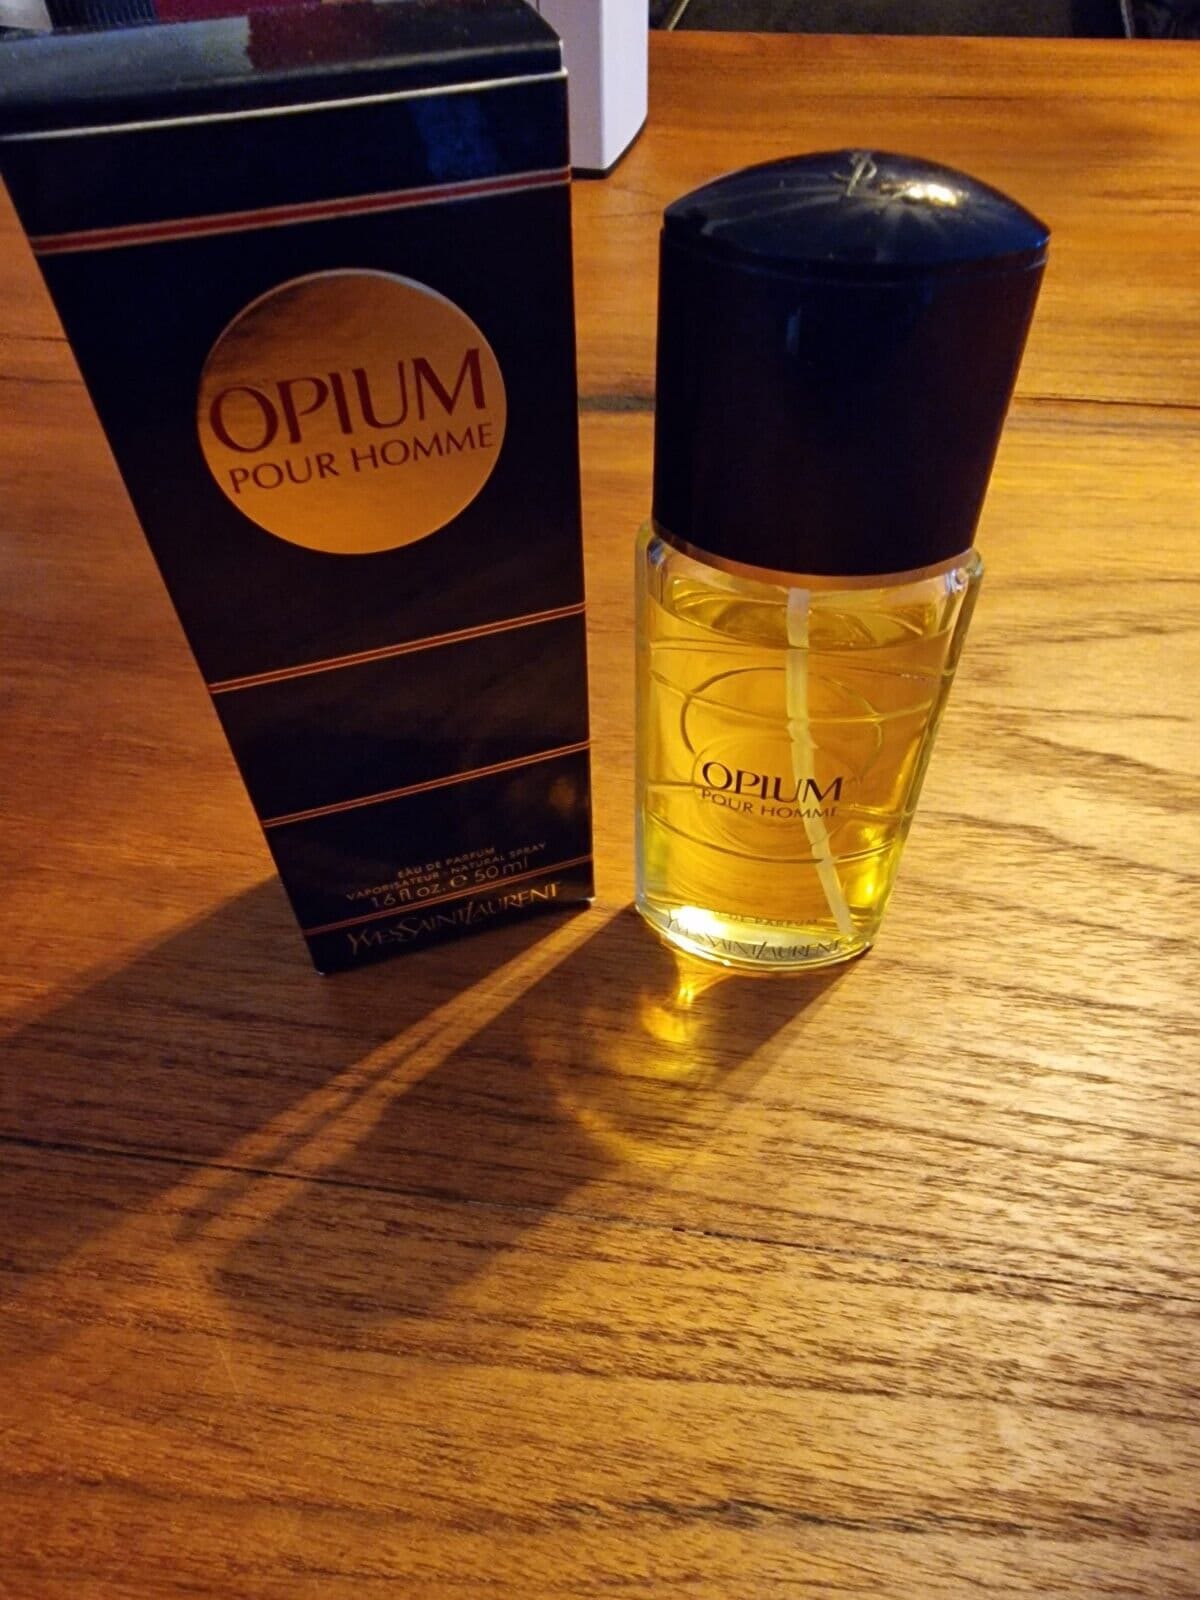 Ysl Opium Für Homme Eau De Parfum - 50 Ml Rarität, Vintage Sehr Schwer Zu Finden Vapo Fast Voll von Etsy - miniperfumes